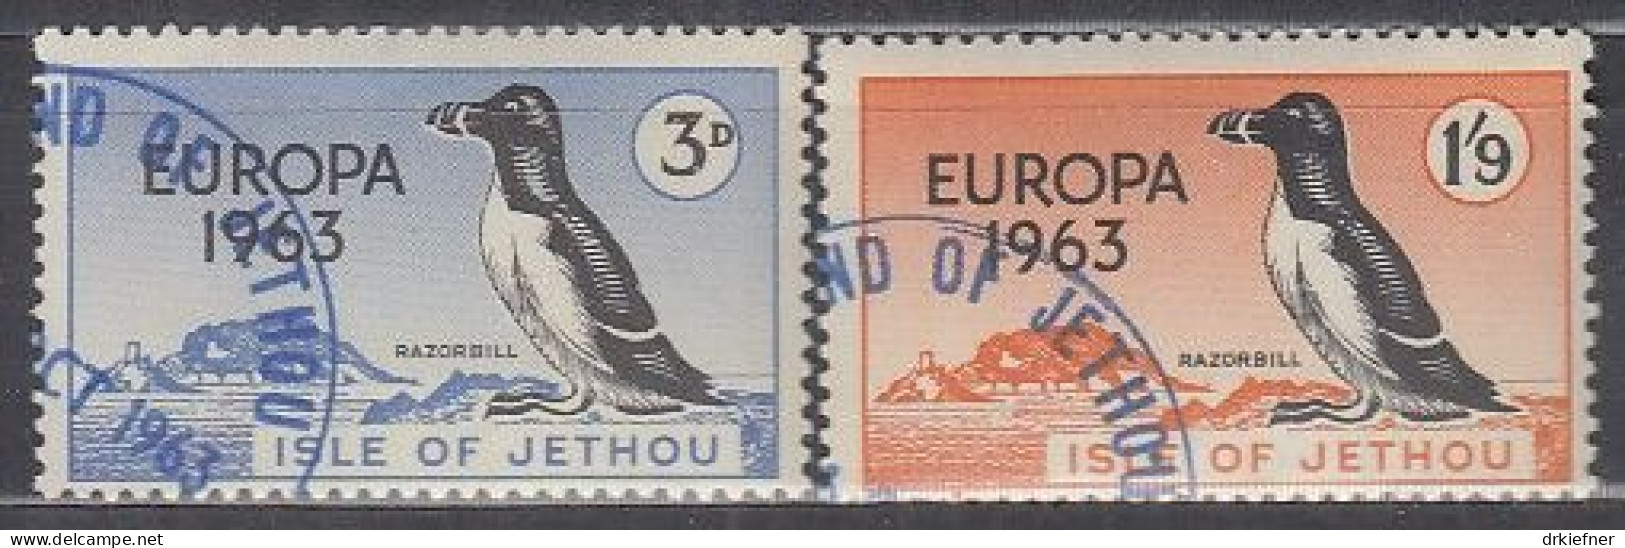 INSEL JETHOU (Guernsey), Nichtamtl. Briefmarken, 2 Marken, Gestempelt, Europa 1963, Vögel - Guernesey